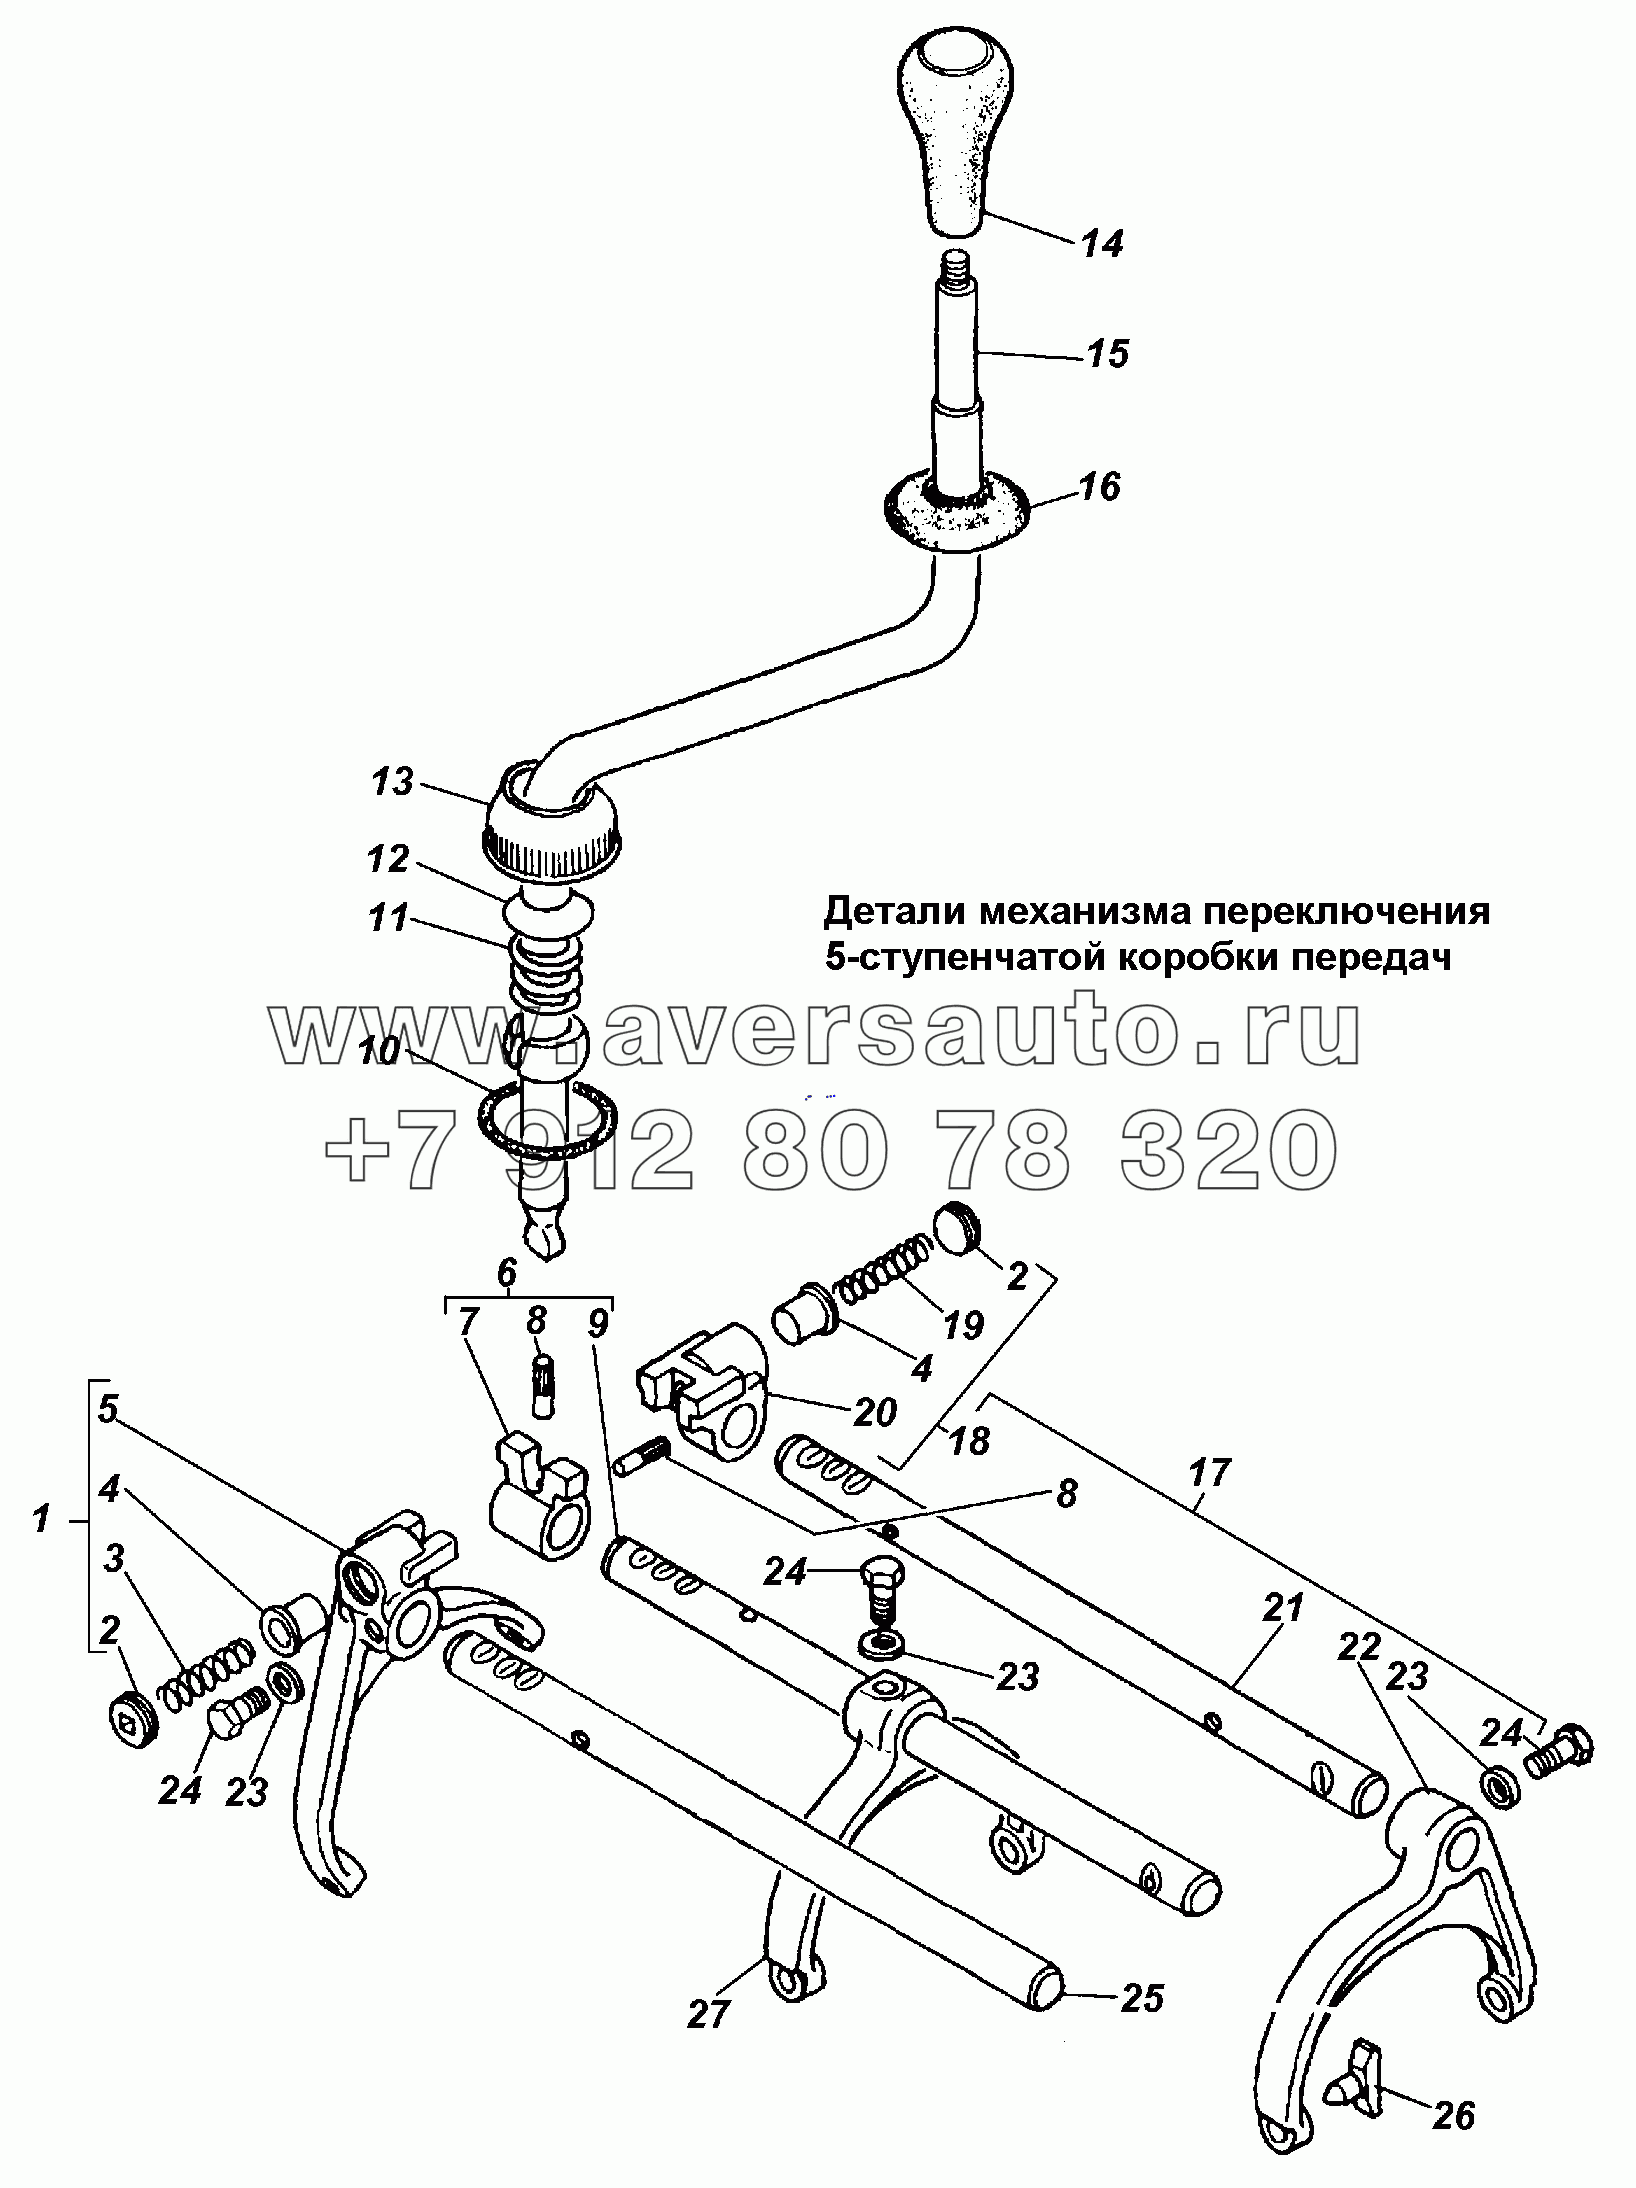 Детали механизма переключения 5-ступенчатой коробки передач